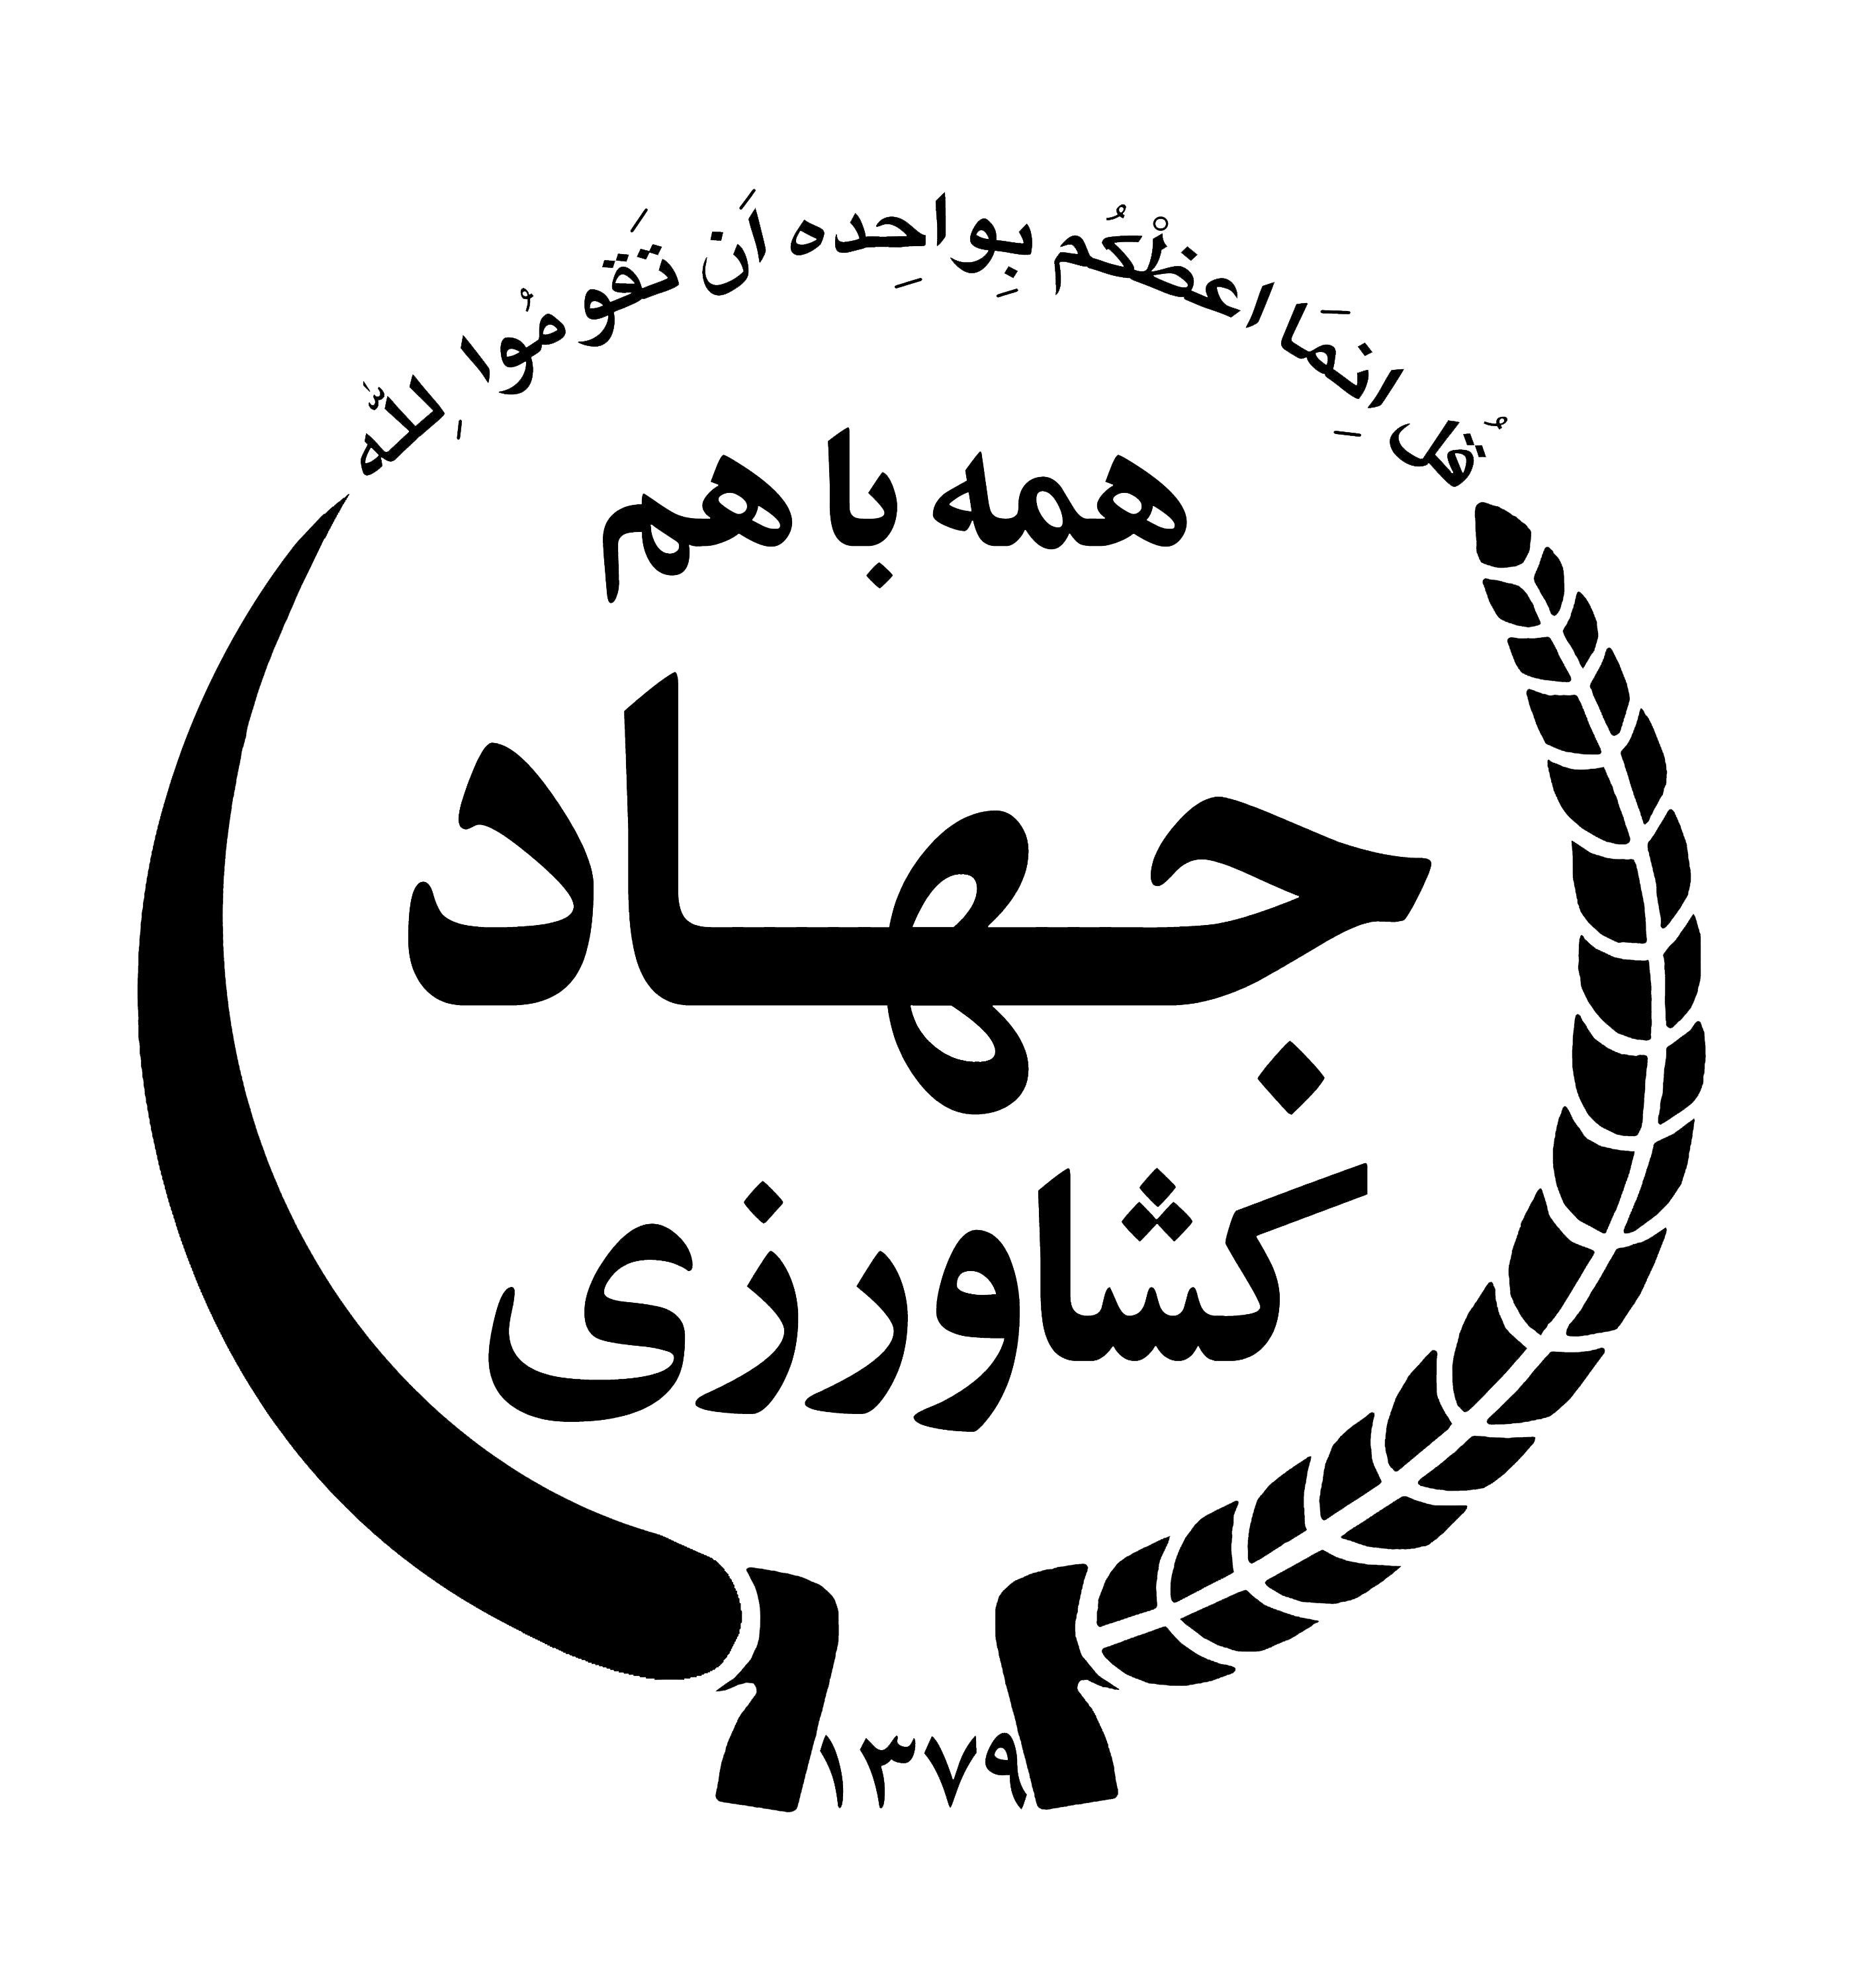 jahad-keshavarzi-logo